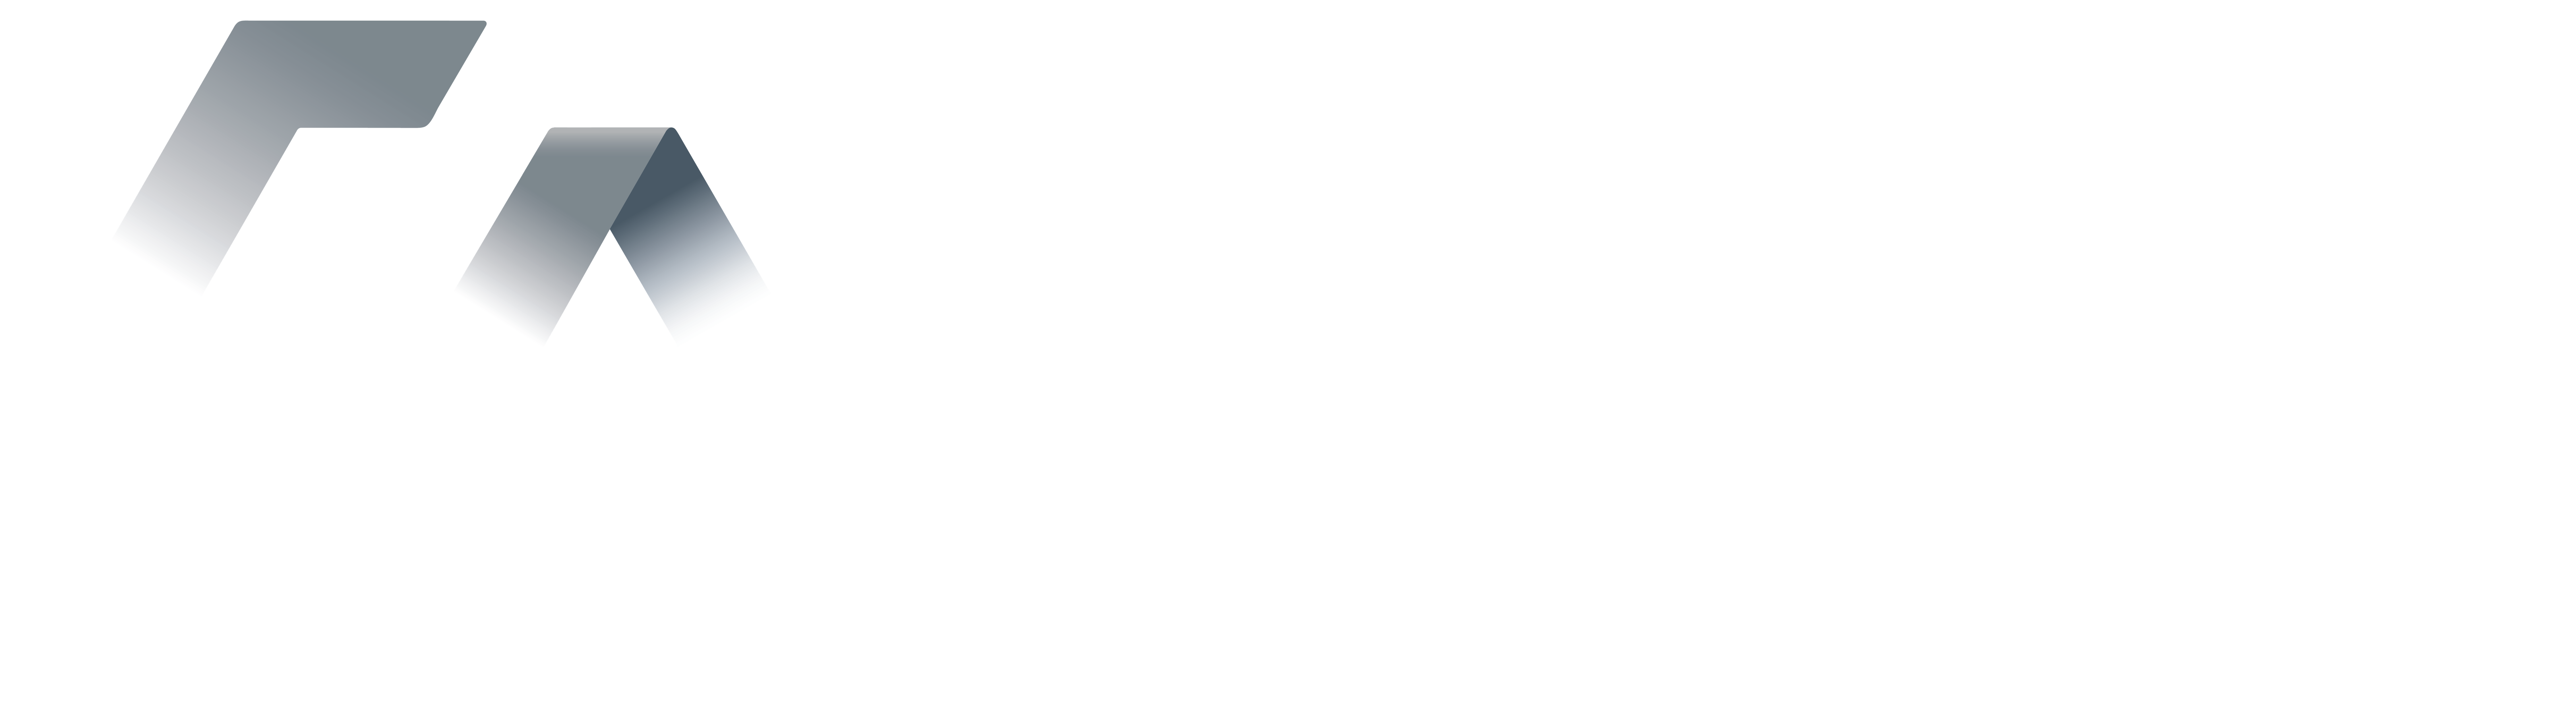 Abseil Access